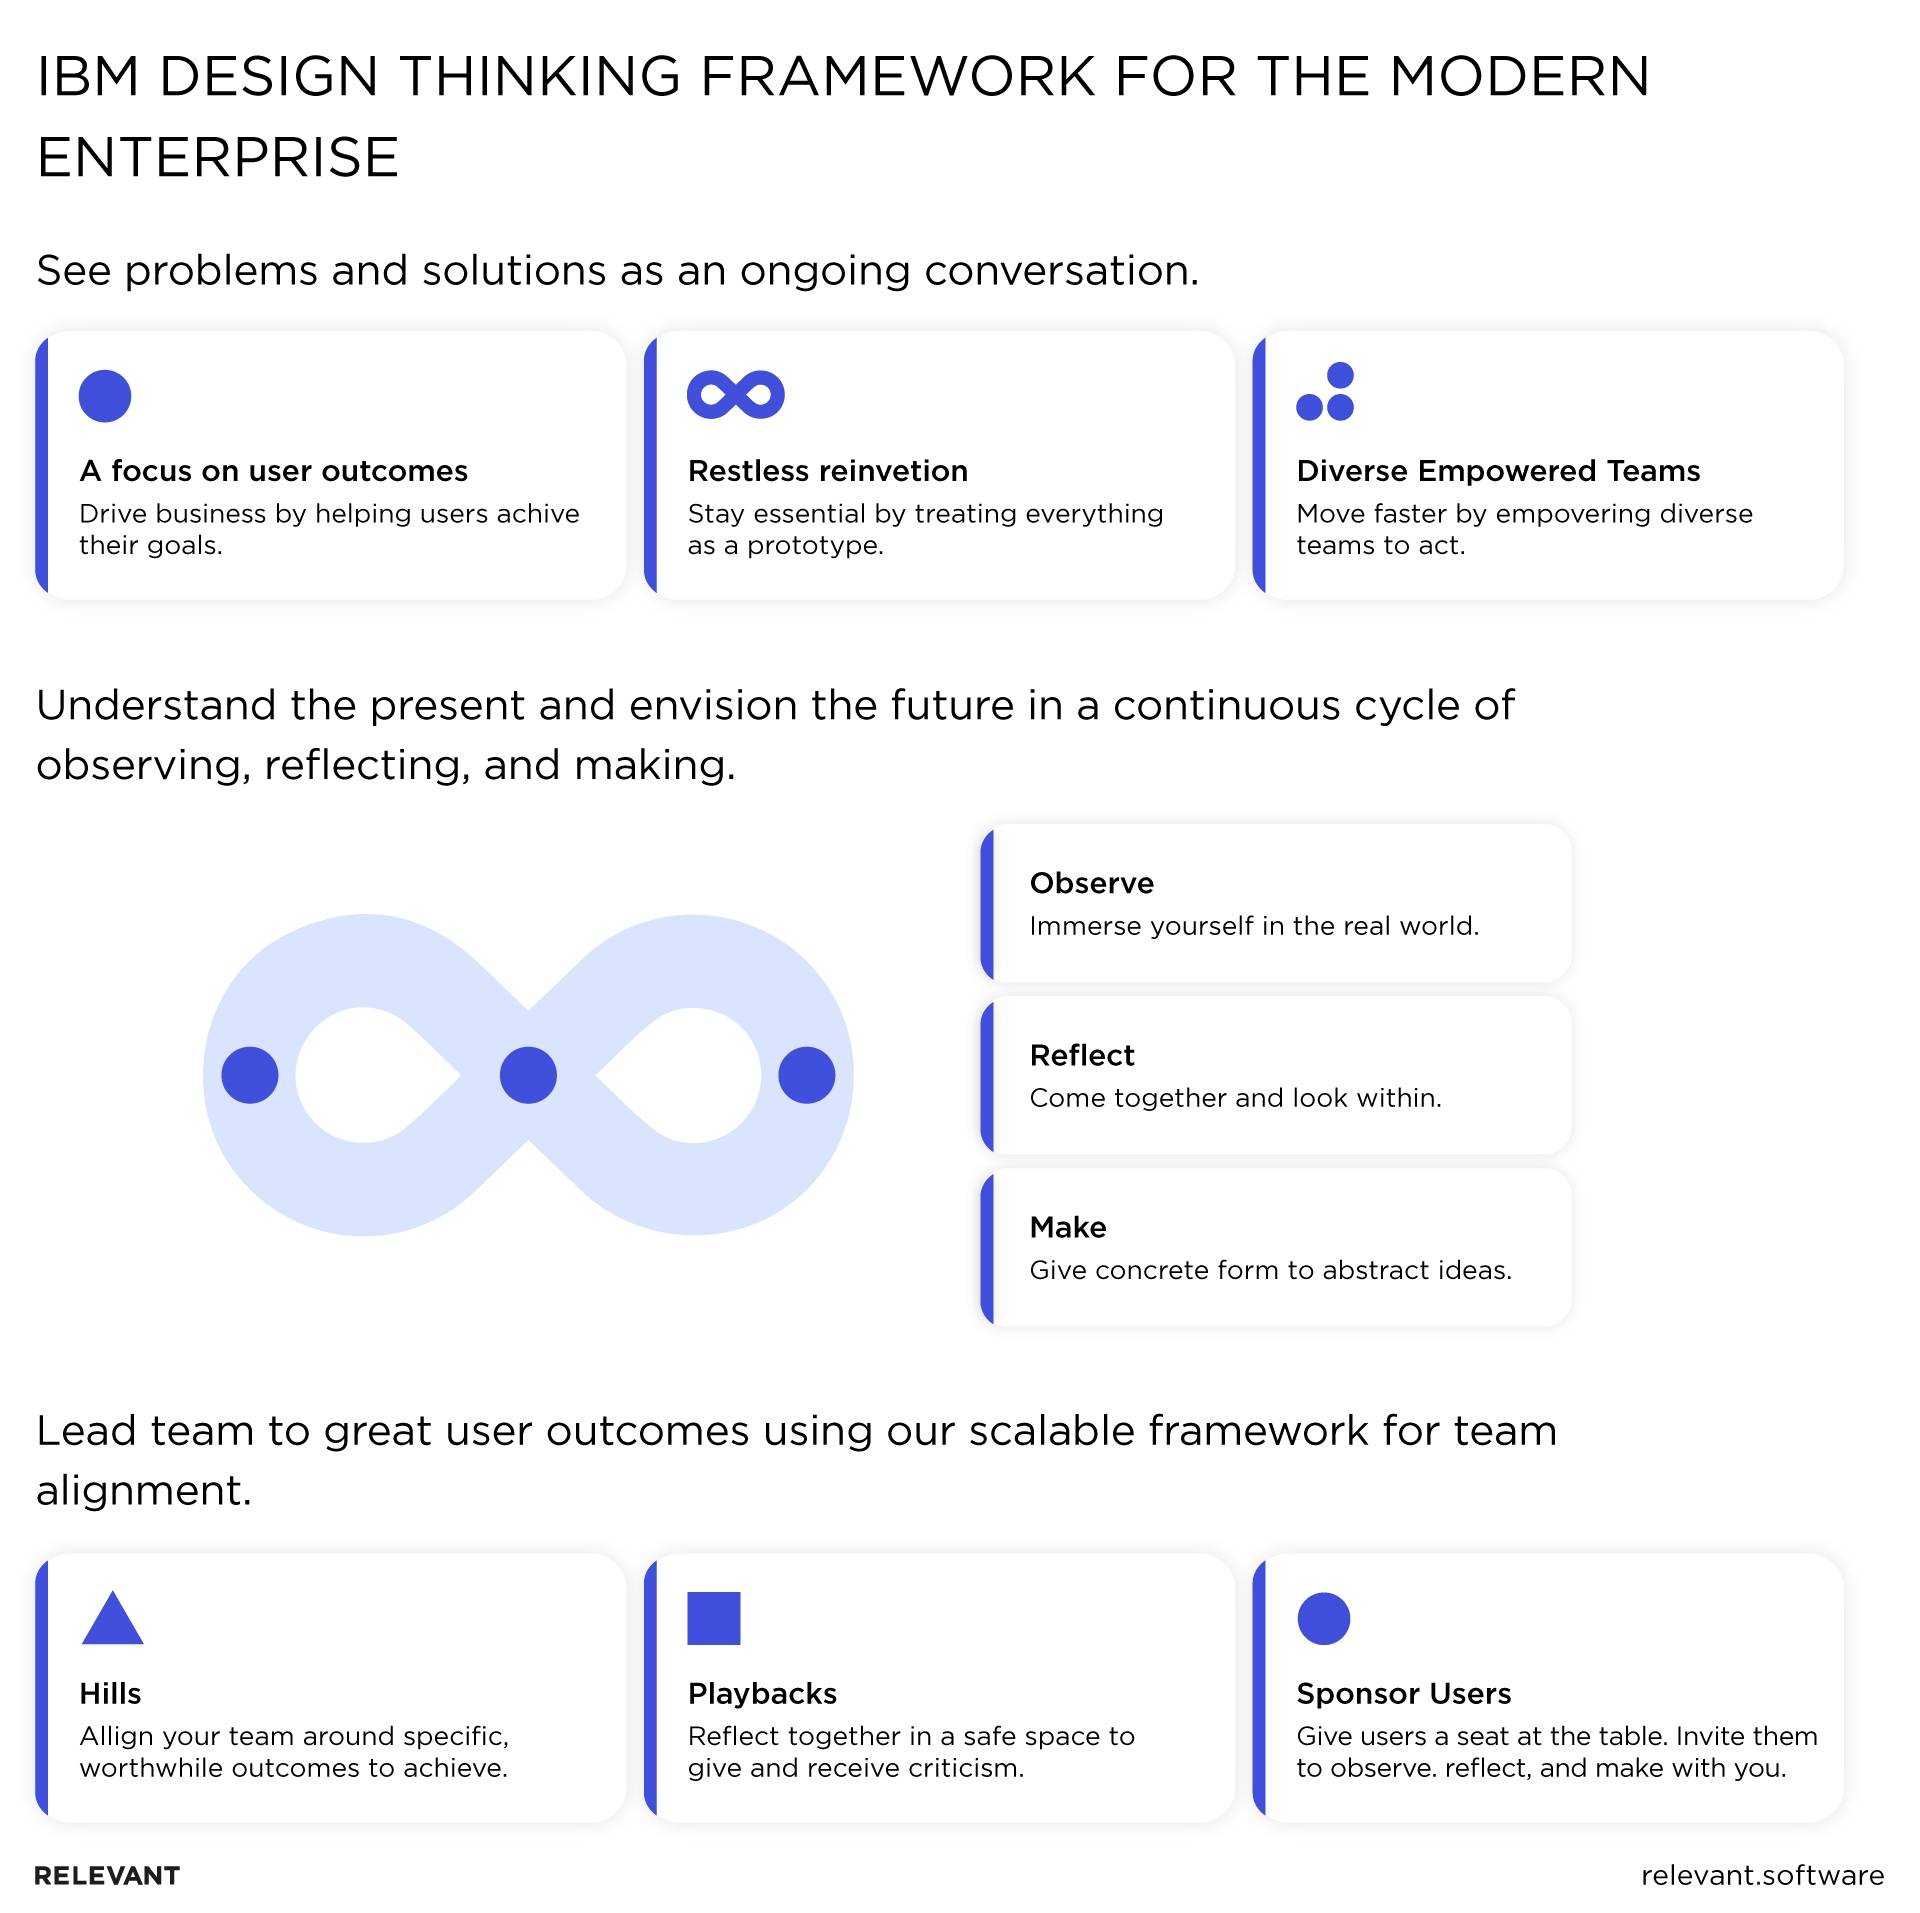 Design thinking framework for modern enterprises